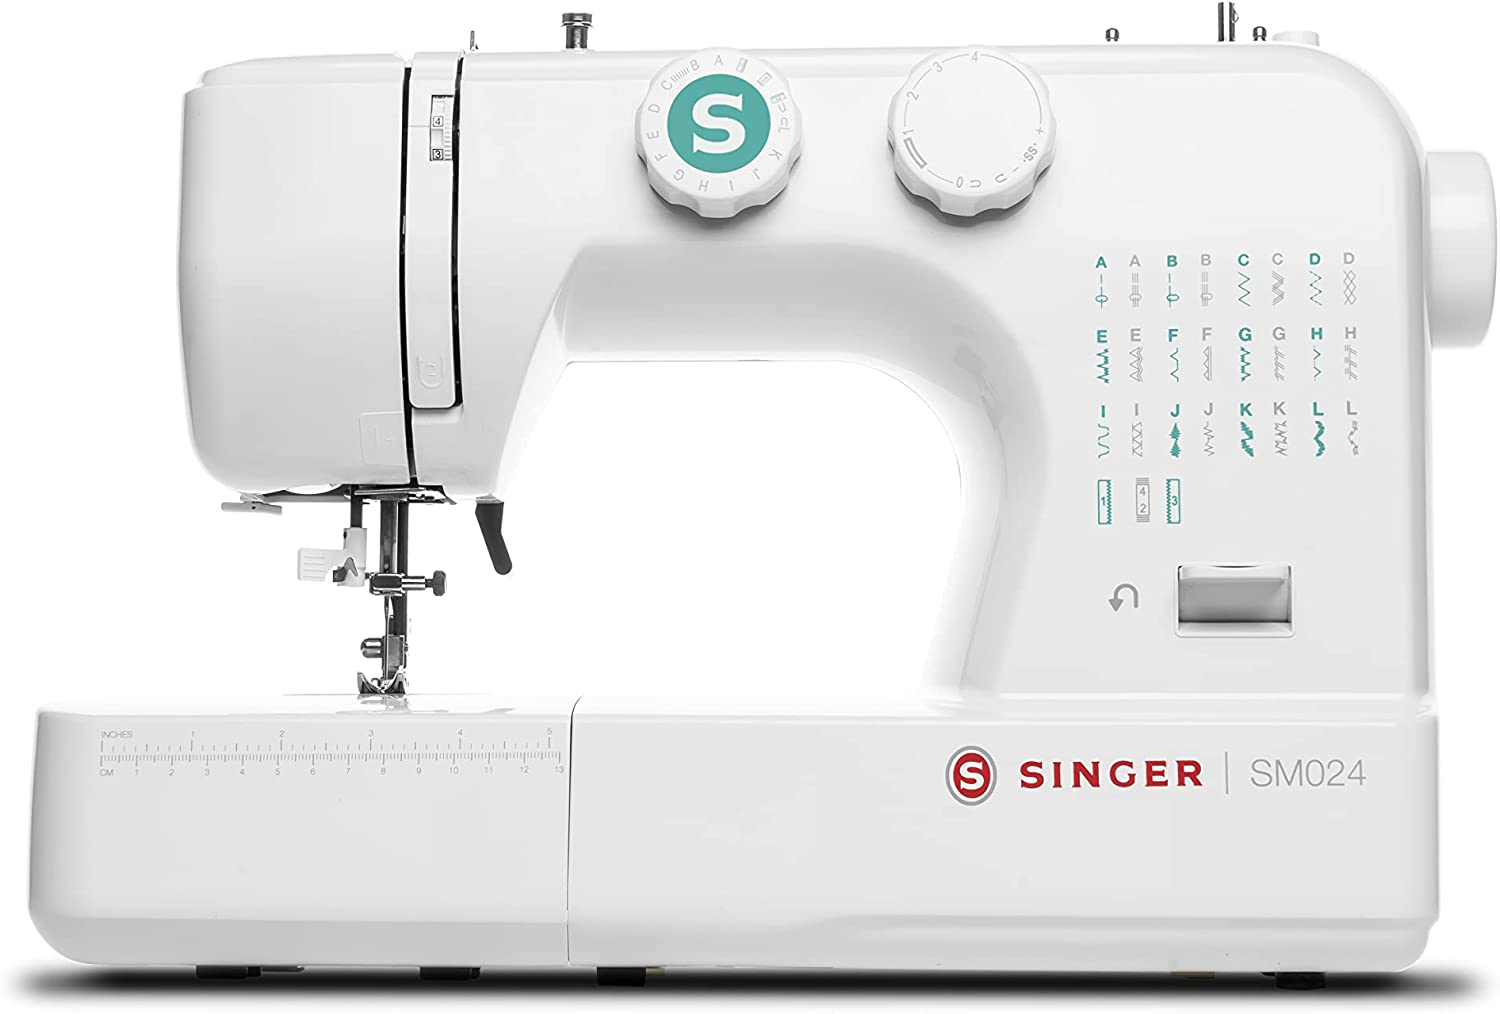 SINGER SM024 Máquina de coser con kit de accesorios incluido, 24 puntadas, simple e ideal para princ